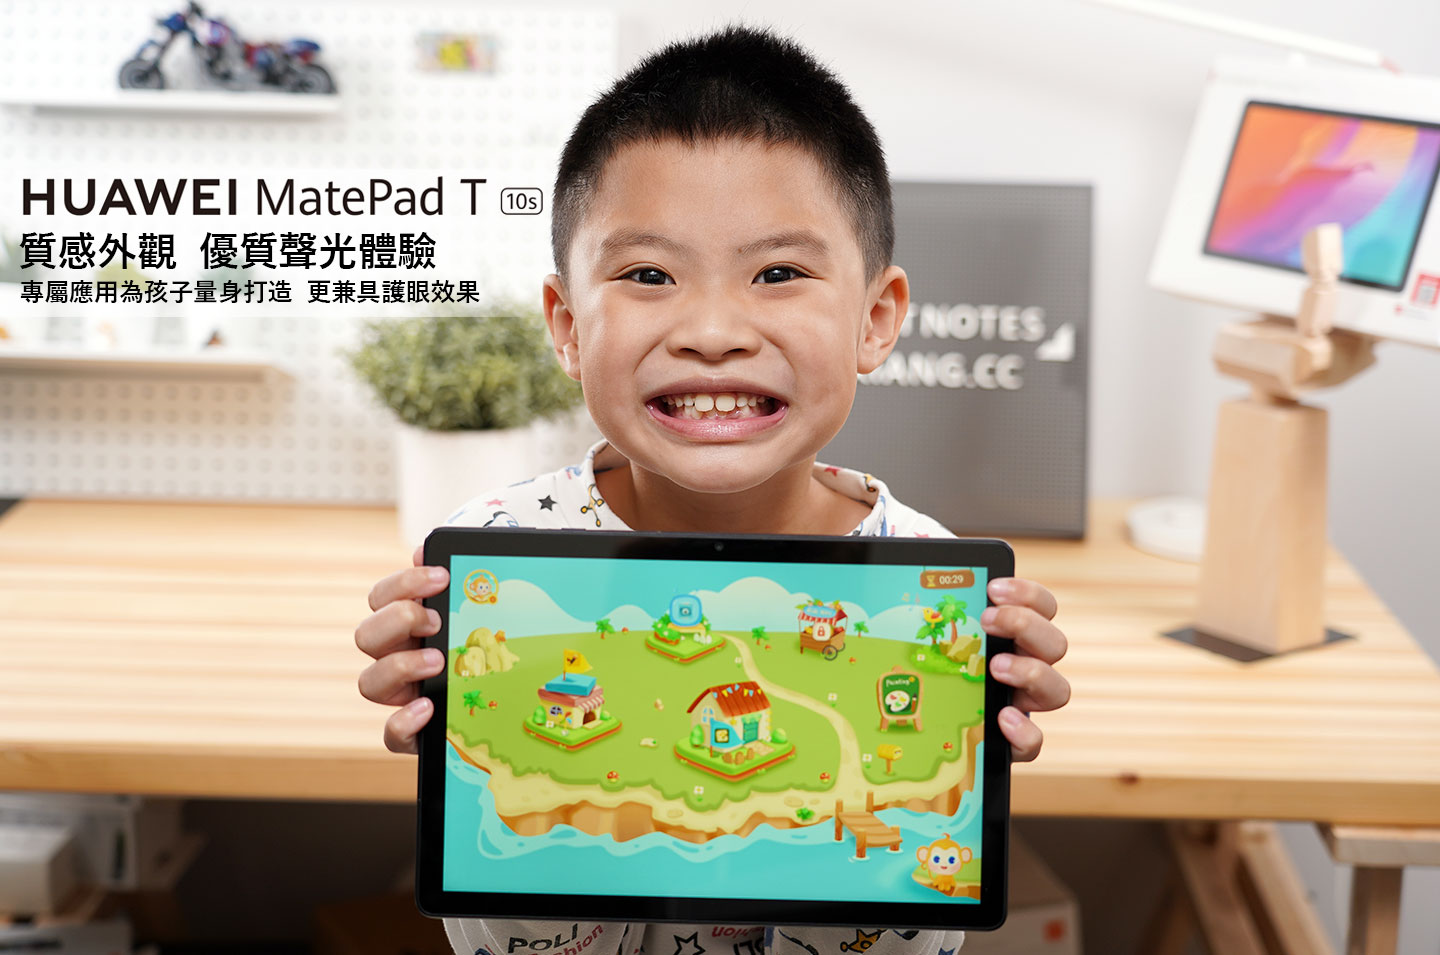 HUAWEI MatePad T10s / T10 雙開箱：給孩子的第一台平板，專屬兒童模式寓教於樂，更兼顧護眼與家長監控！ - 阿祥的網路筆記本